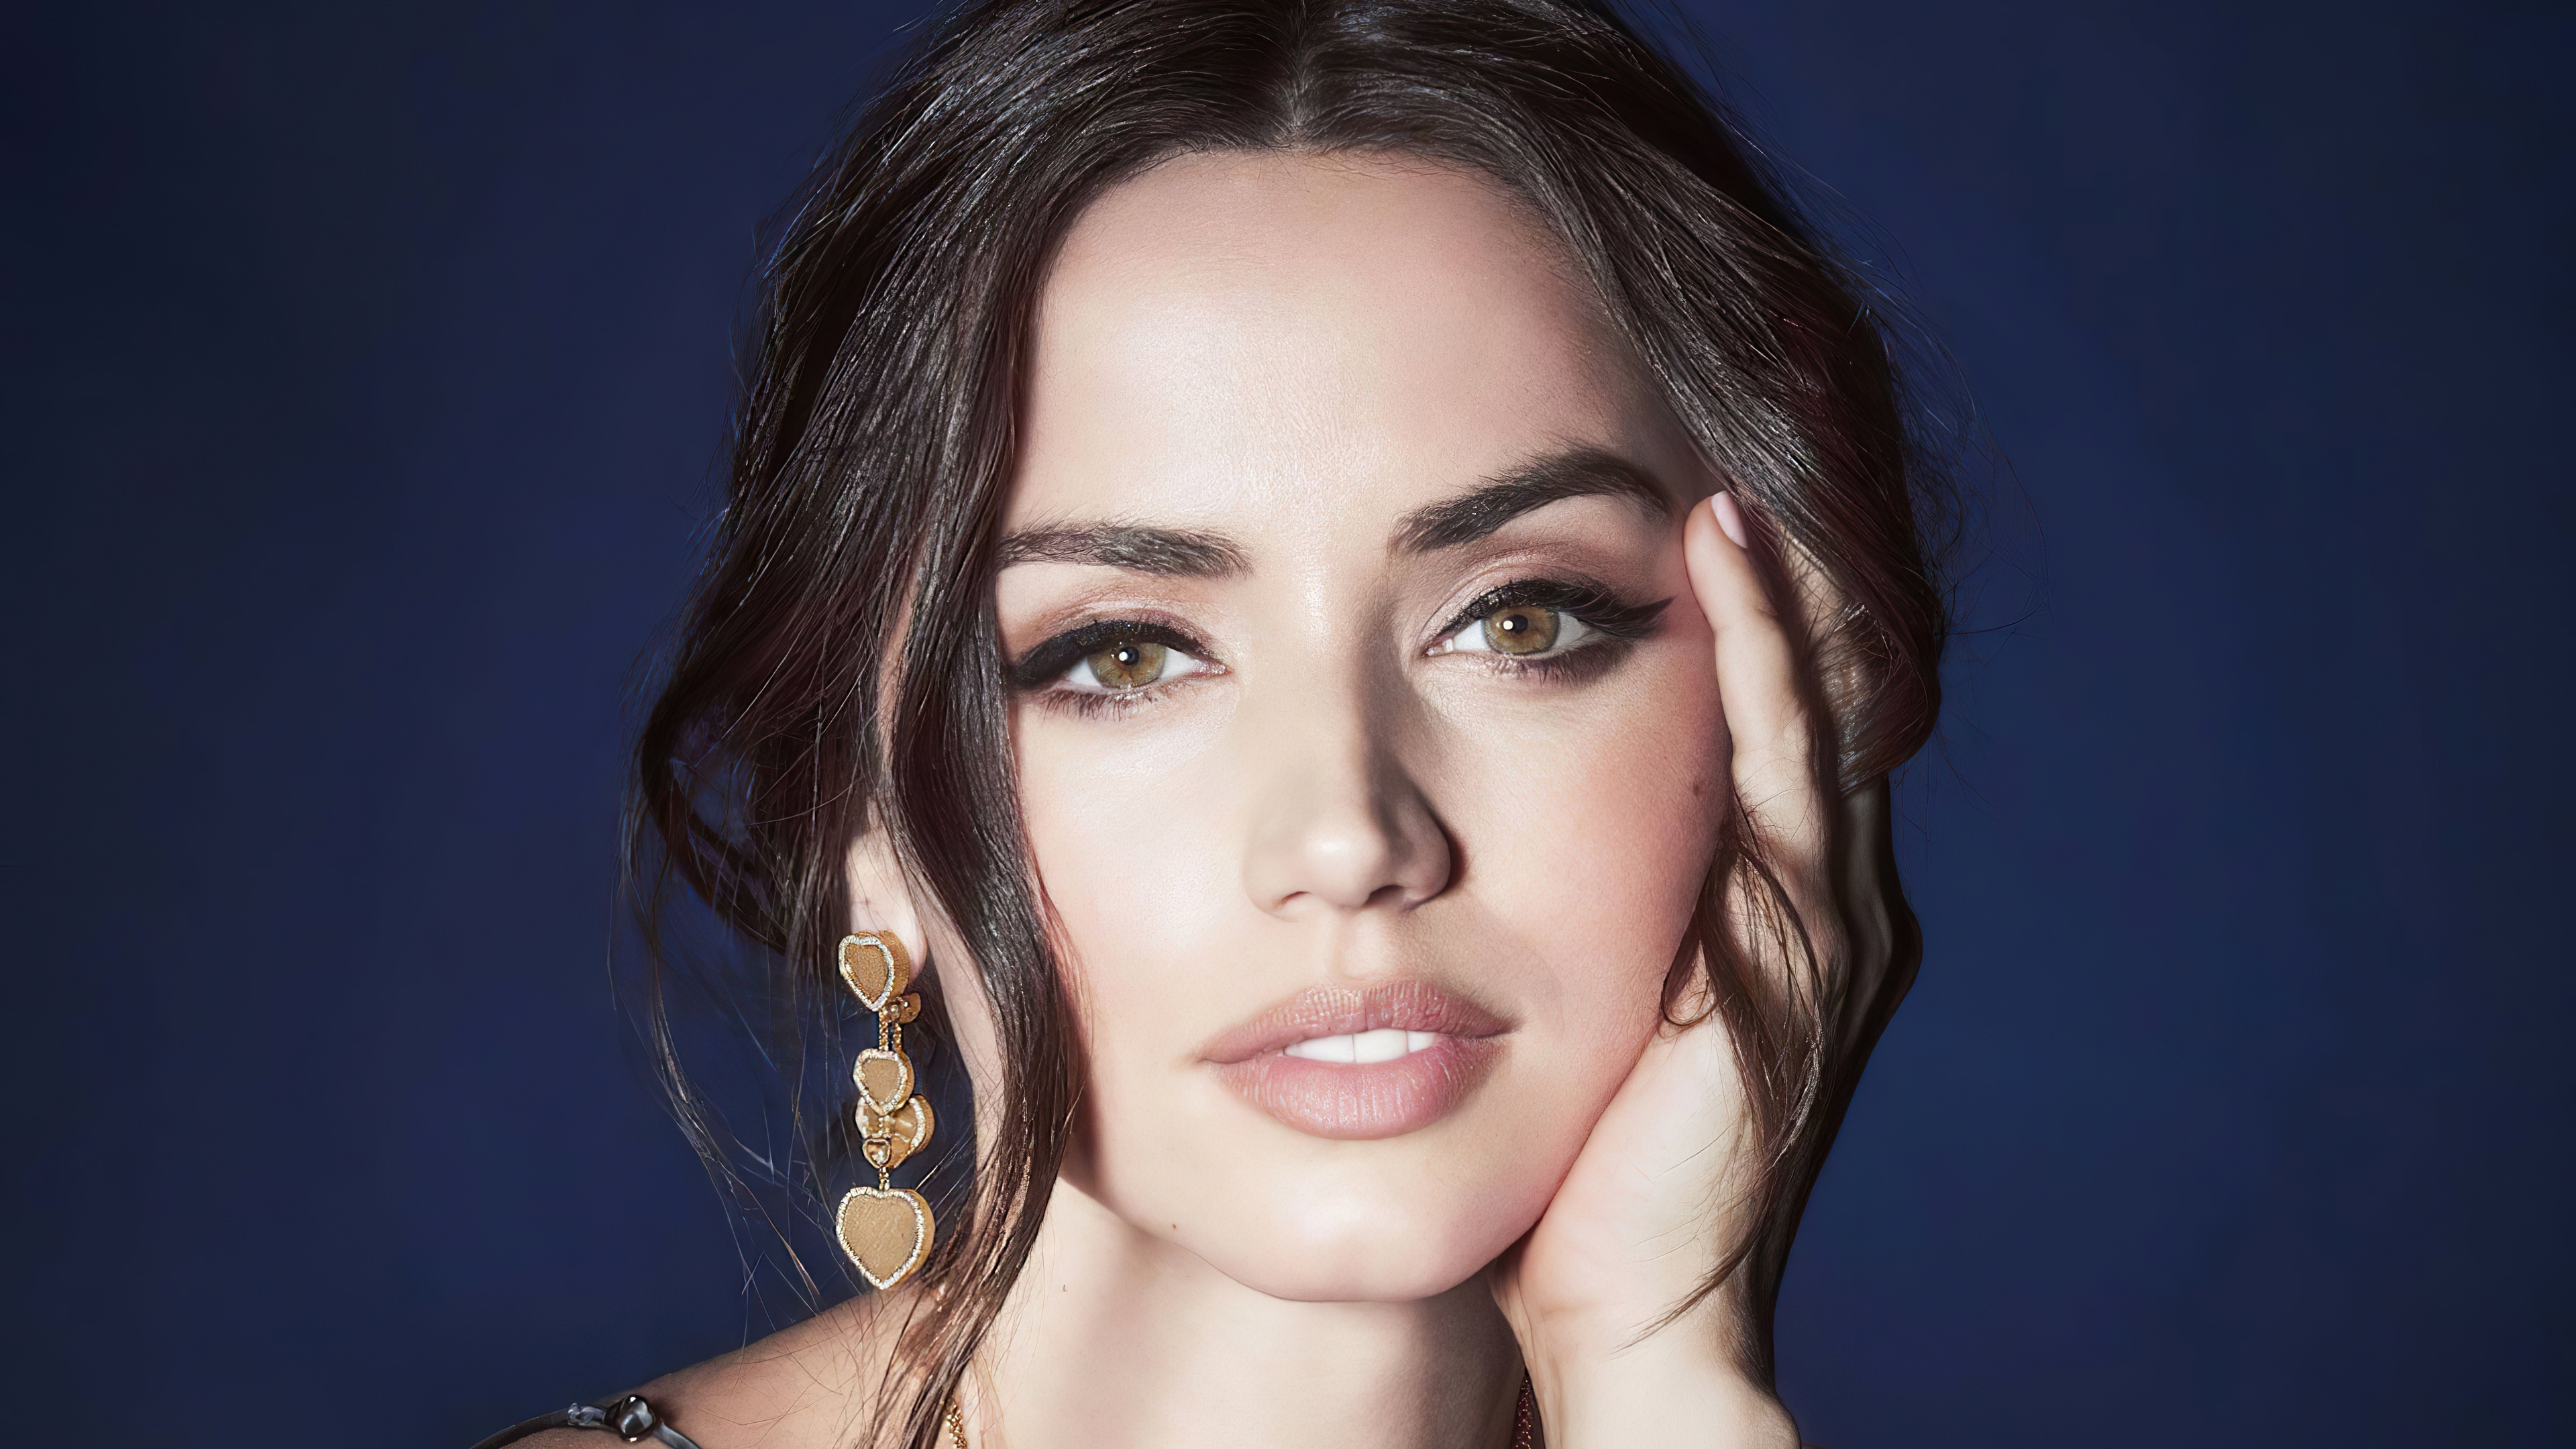 Actress wearing earrings, Green eyes beauty, Celebrity wallpaper, Fashion inspiration, 3840x2160 4K Desktop